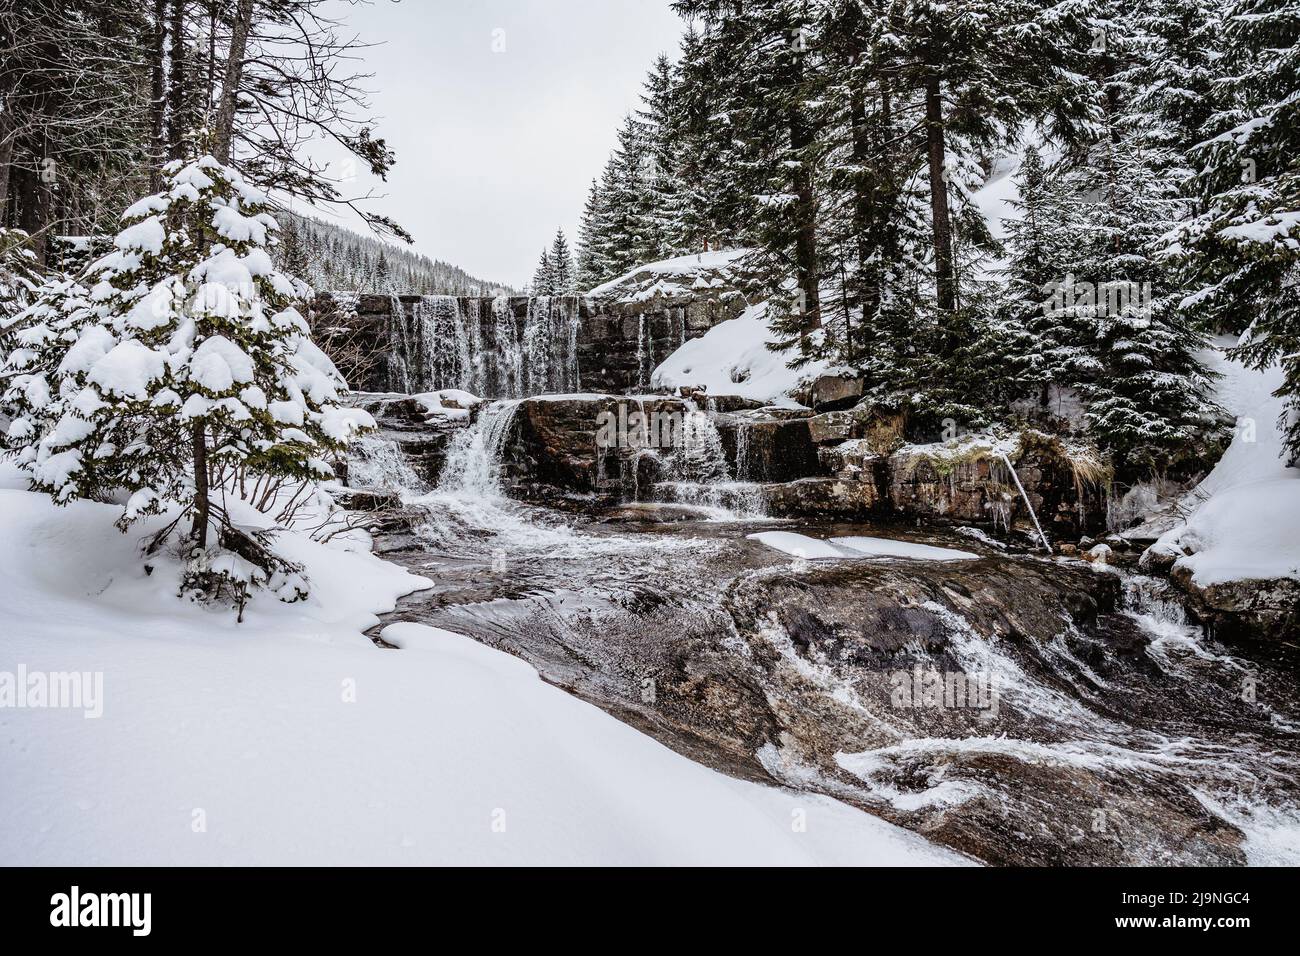 Cascada de invierno llamada Certova strouha en Krkonose montañas, República Checa.Snowy paisaje congelado.Frozen cascada y corriente salvaje, wat de exposición larga Foto de stock